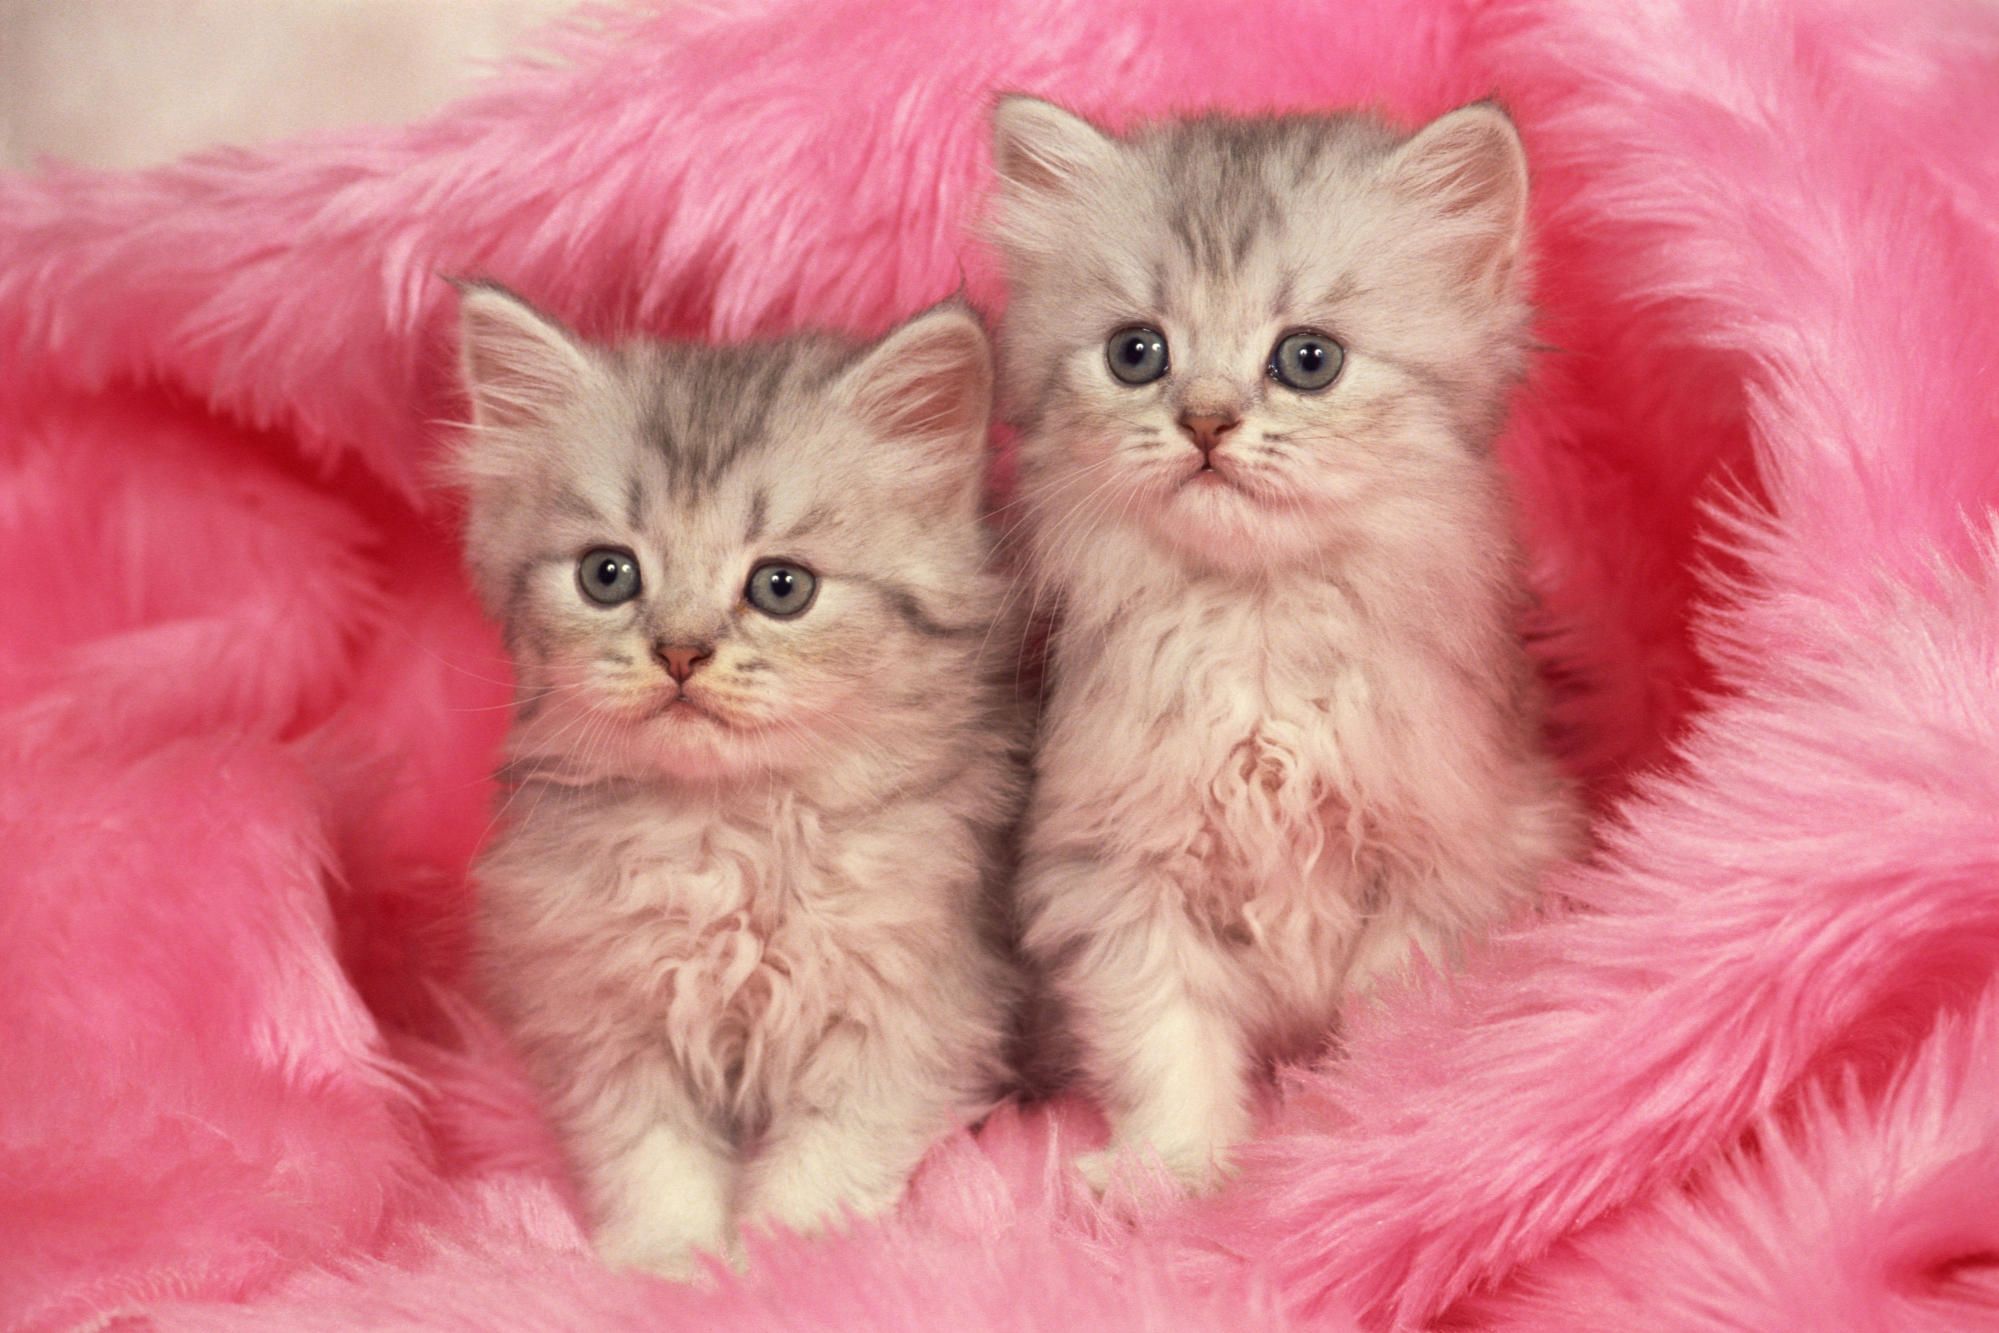 Bạn đam mê mèo và muốn thấy những chú mèo hồng dễ thương giống như trong cơn mơ? Đừng bỏ qua bức ảnh này! Chúng tôi sẽ dẫn bạn đến một thế giới của sự dễ thương và tình cảm với những chú mèo xinh xắn.